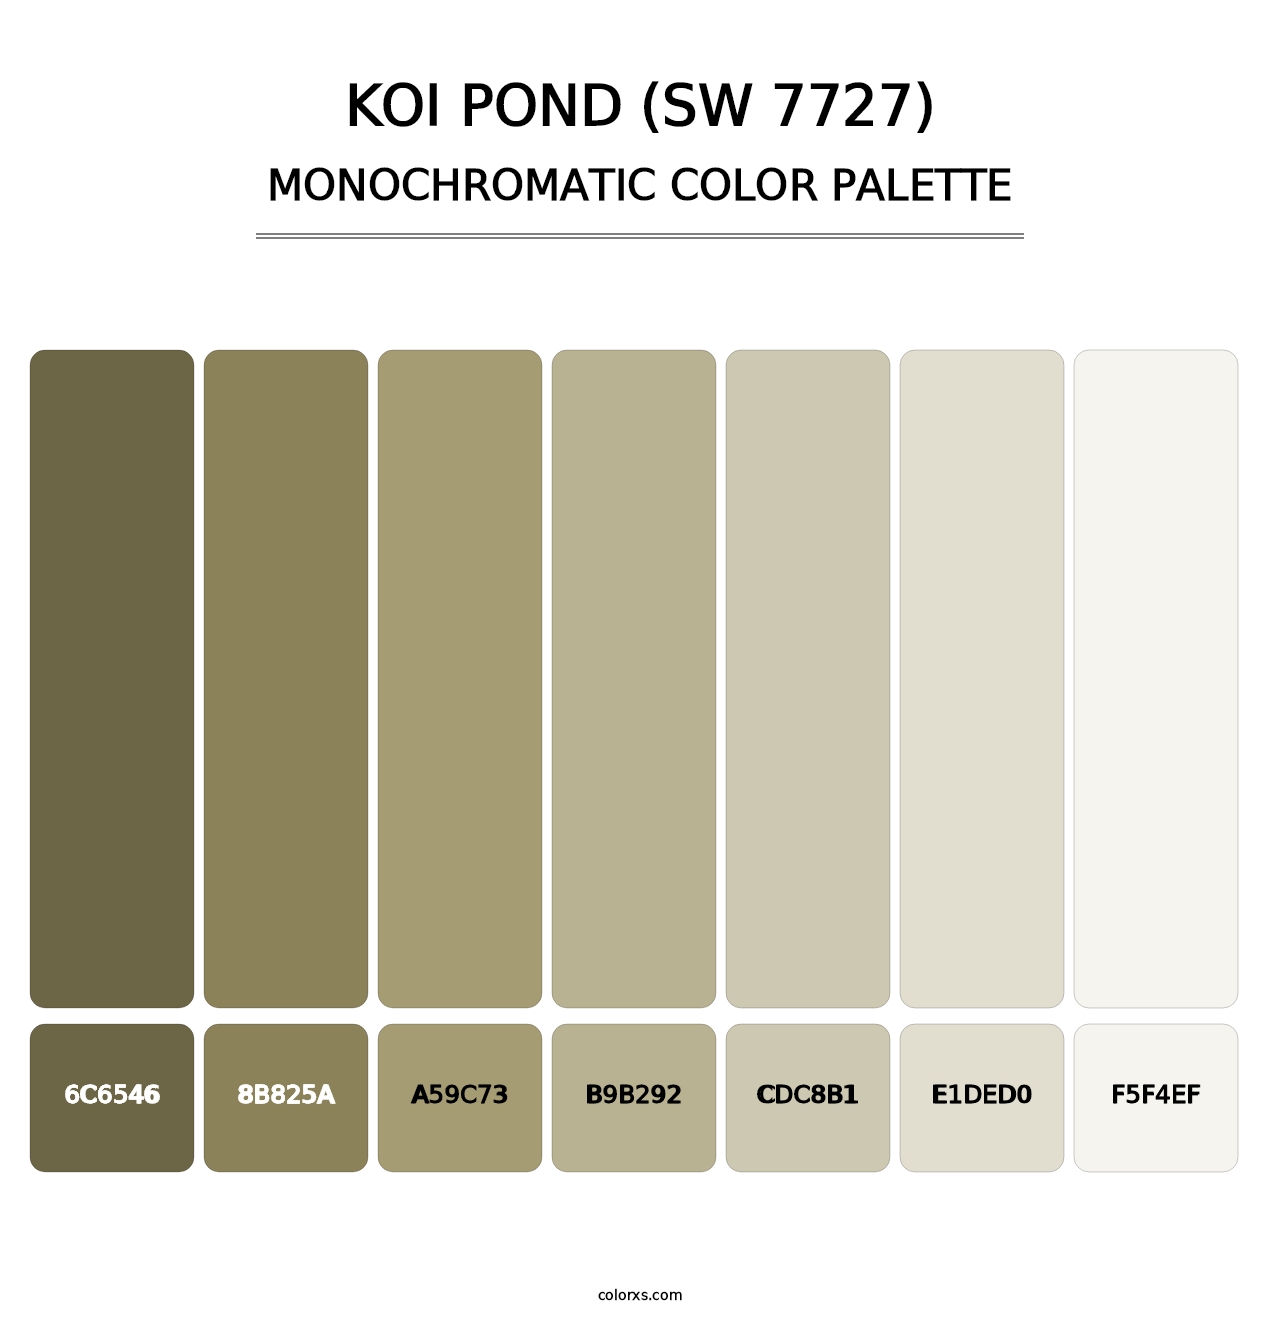 Koi Pond (SW 7727) - Monochromatic Color Palette